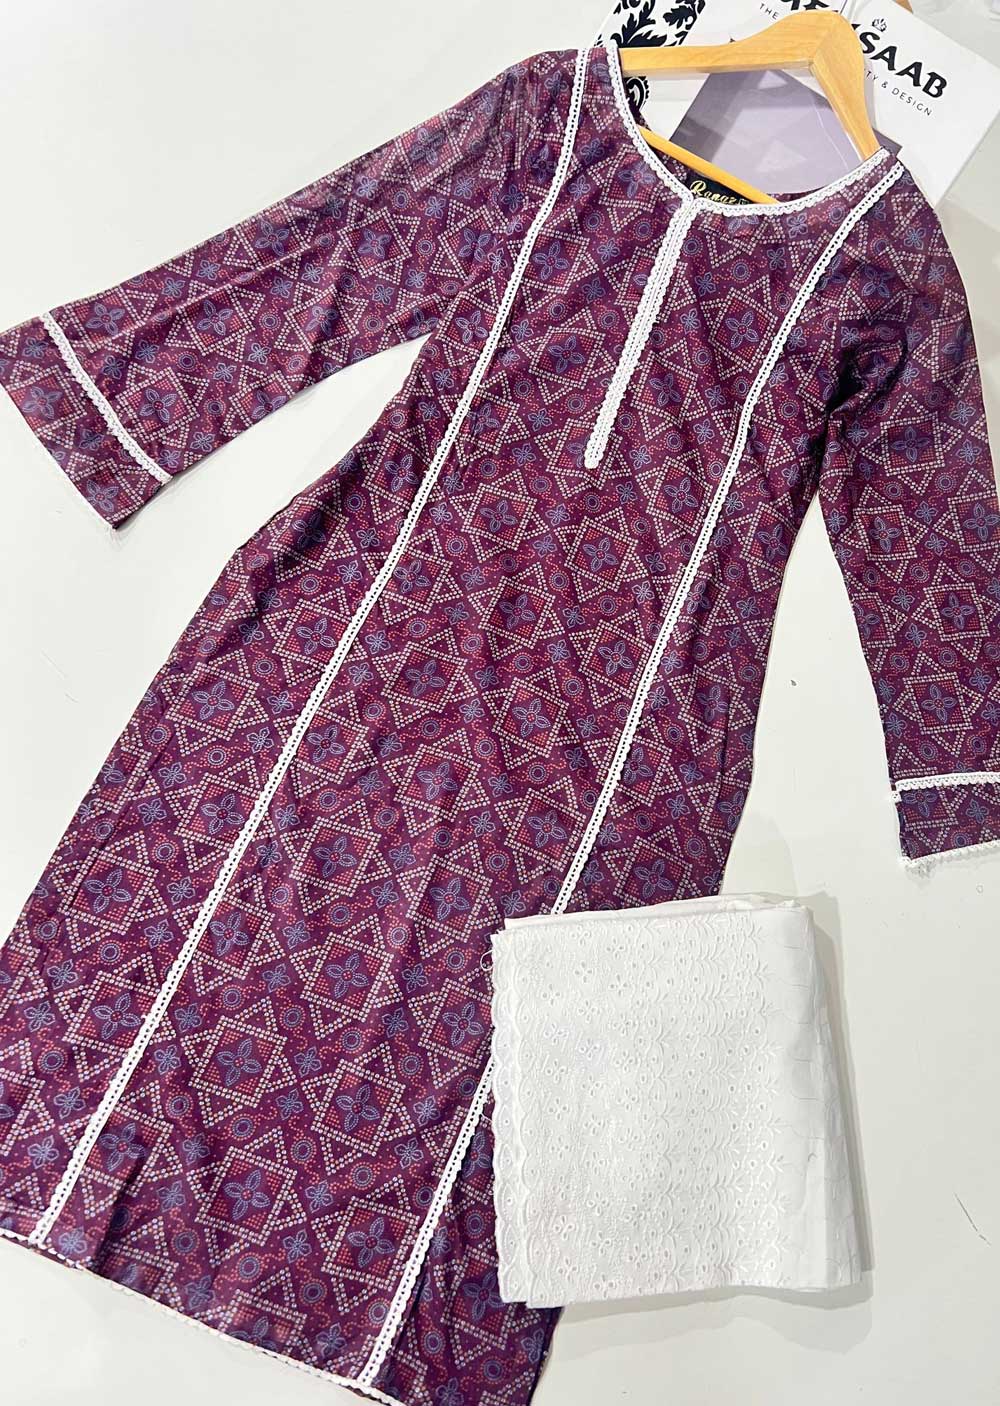 RGZ1303 Readymade Floral Printed Lawn Suit - Memsaab Online